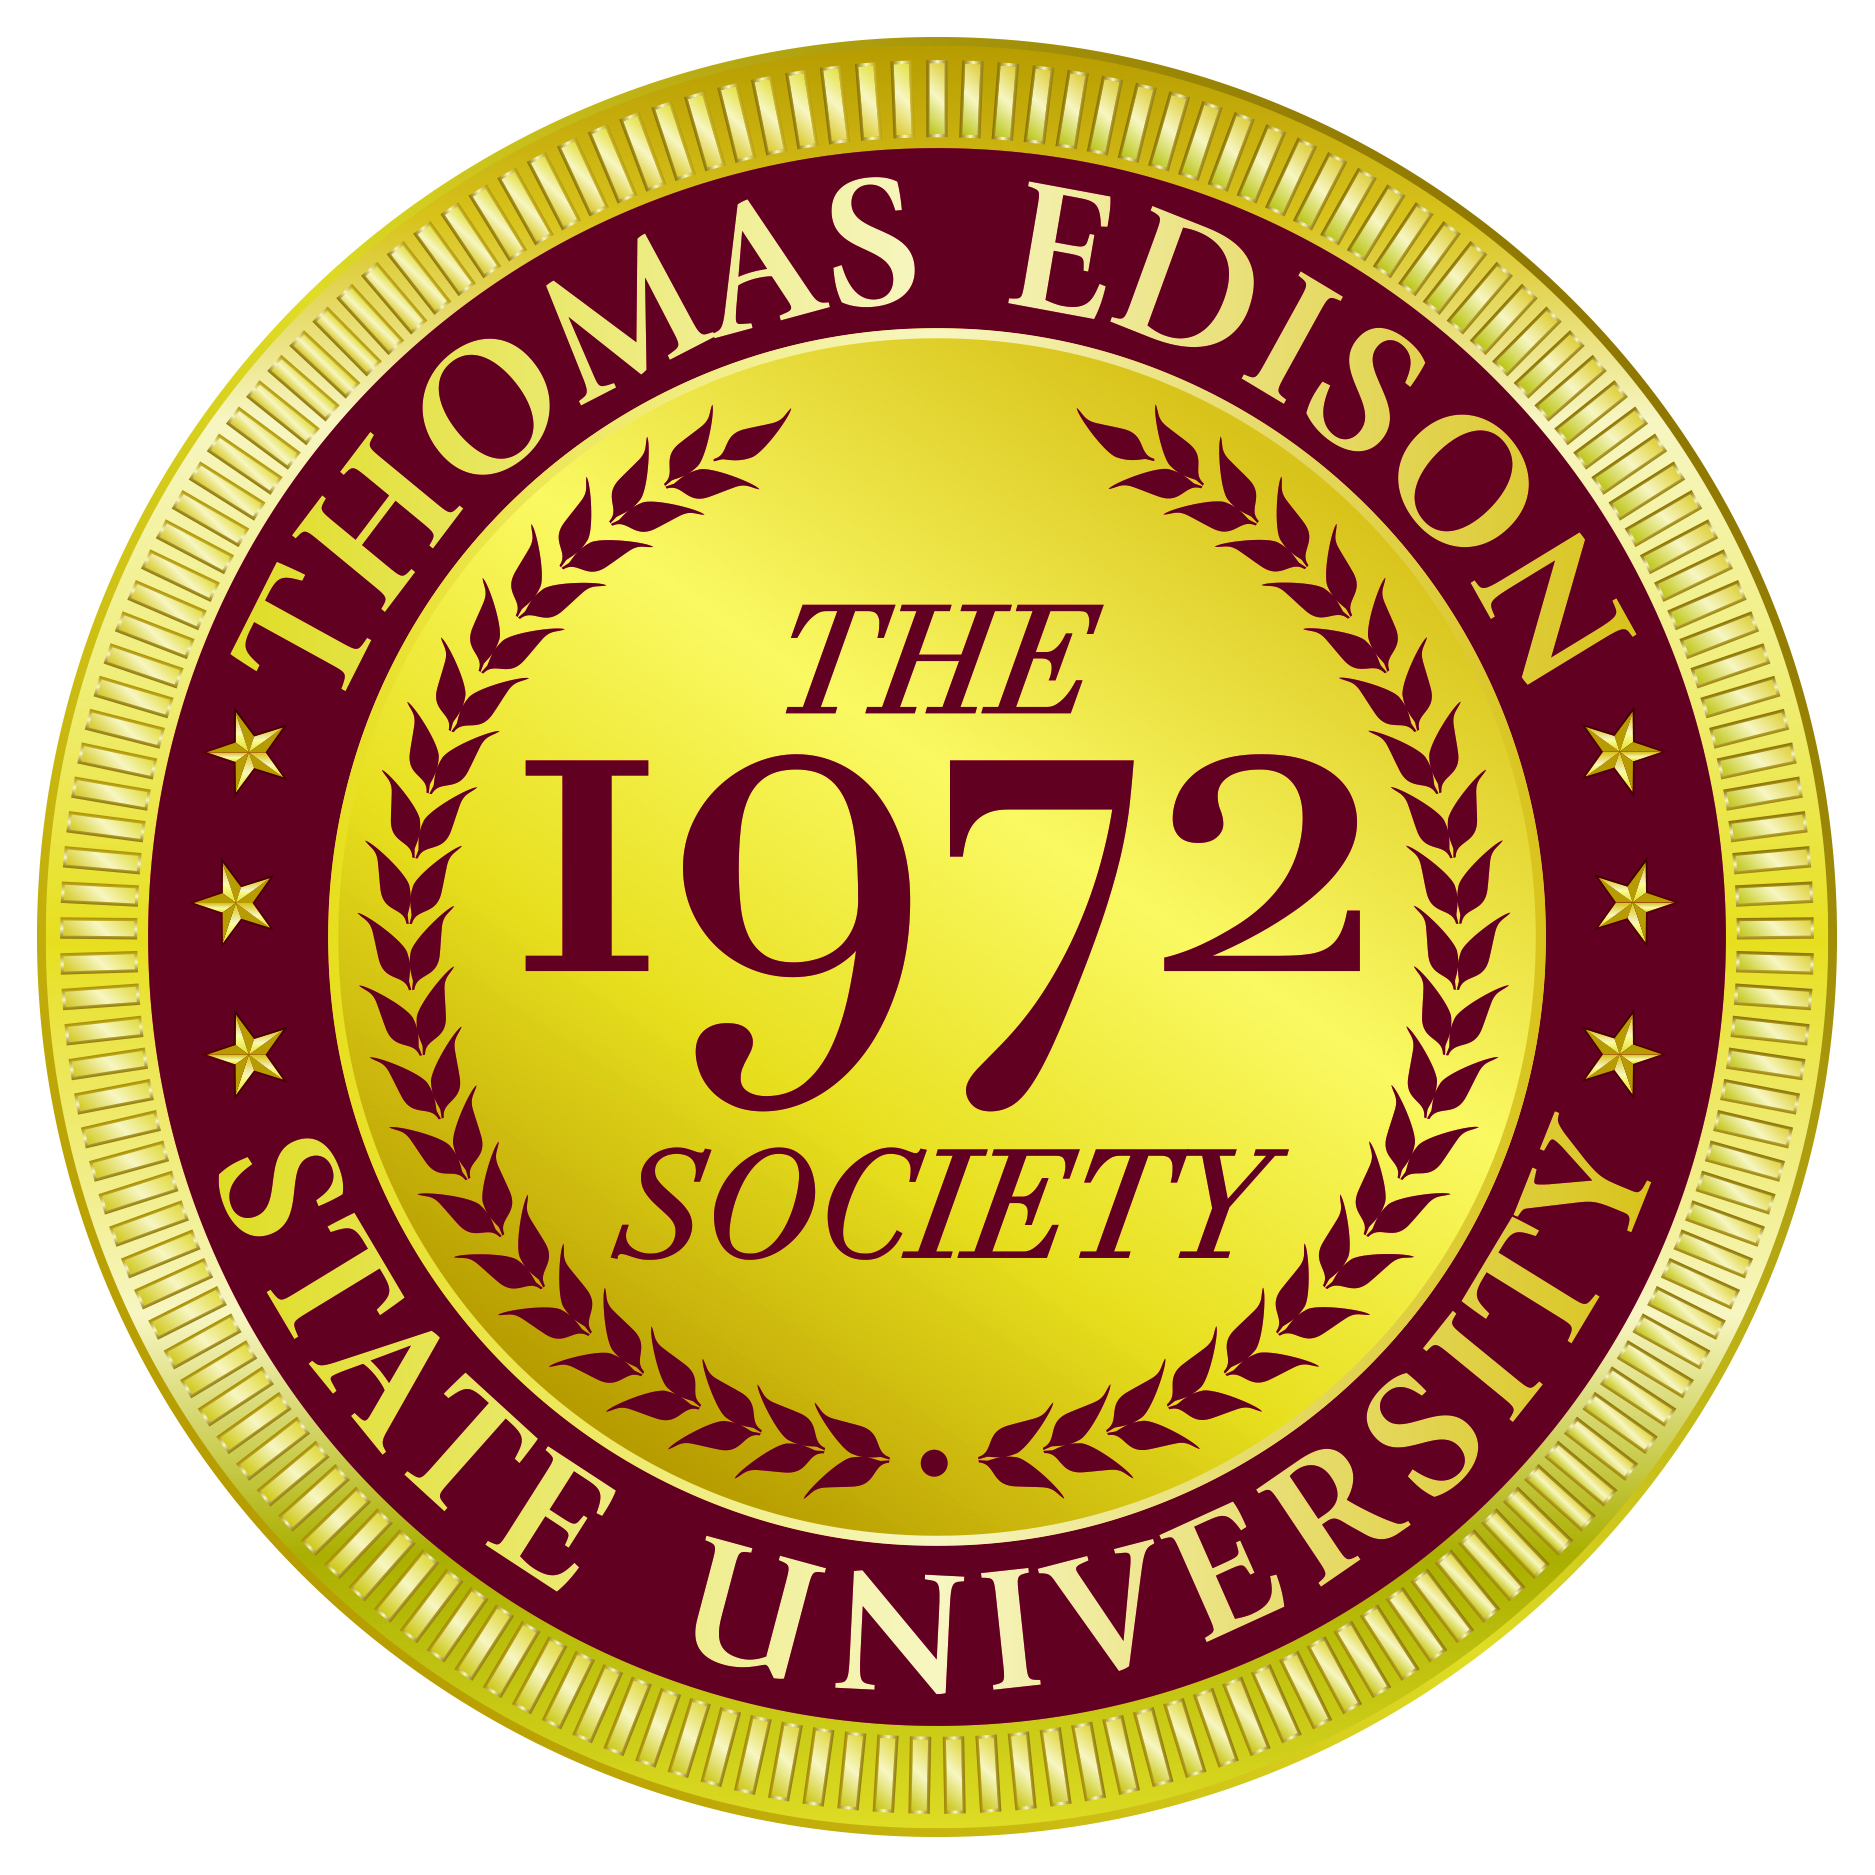 1972 Society icon